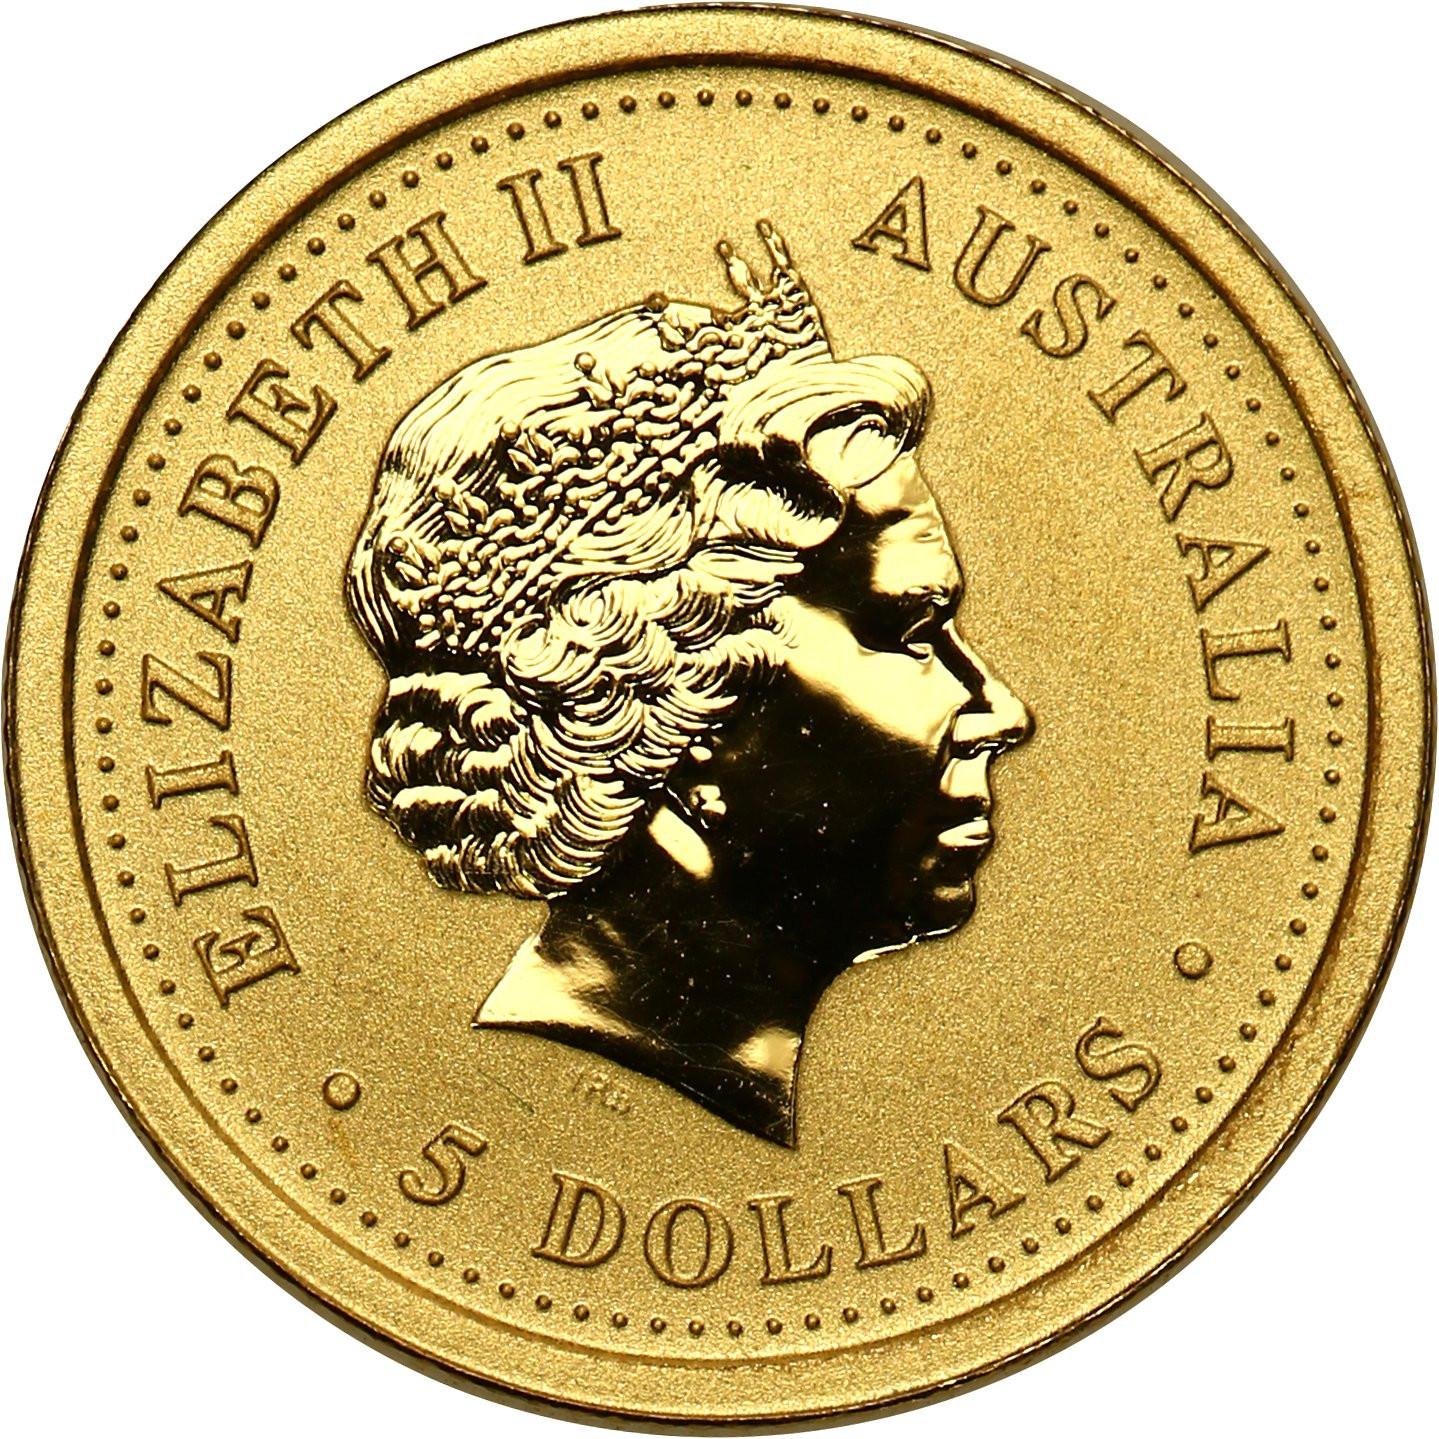 Australia. Złote 5 dolarów 2001 - ROK WĘŻA - 1/20 uncji złota